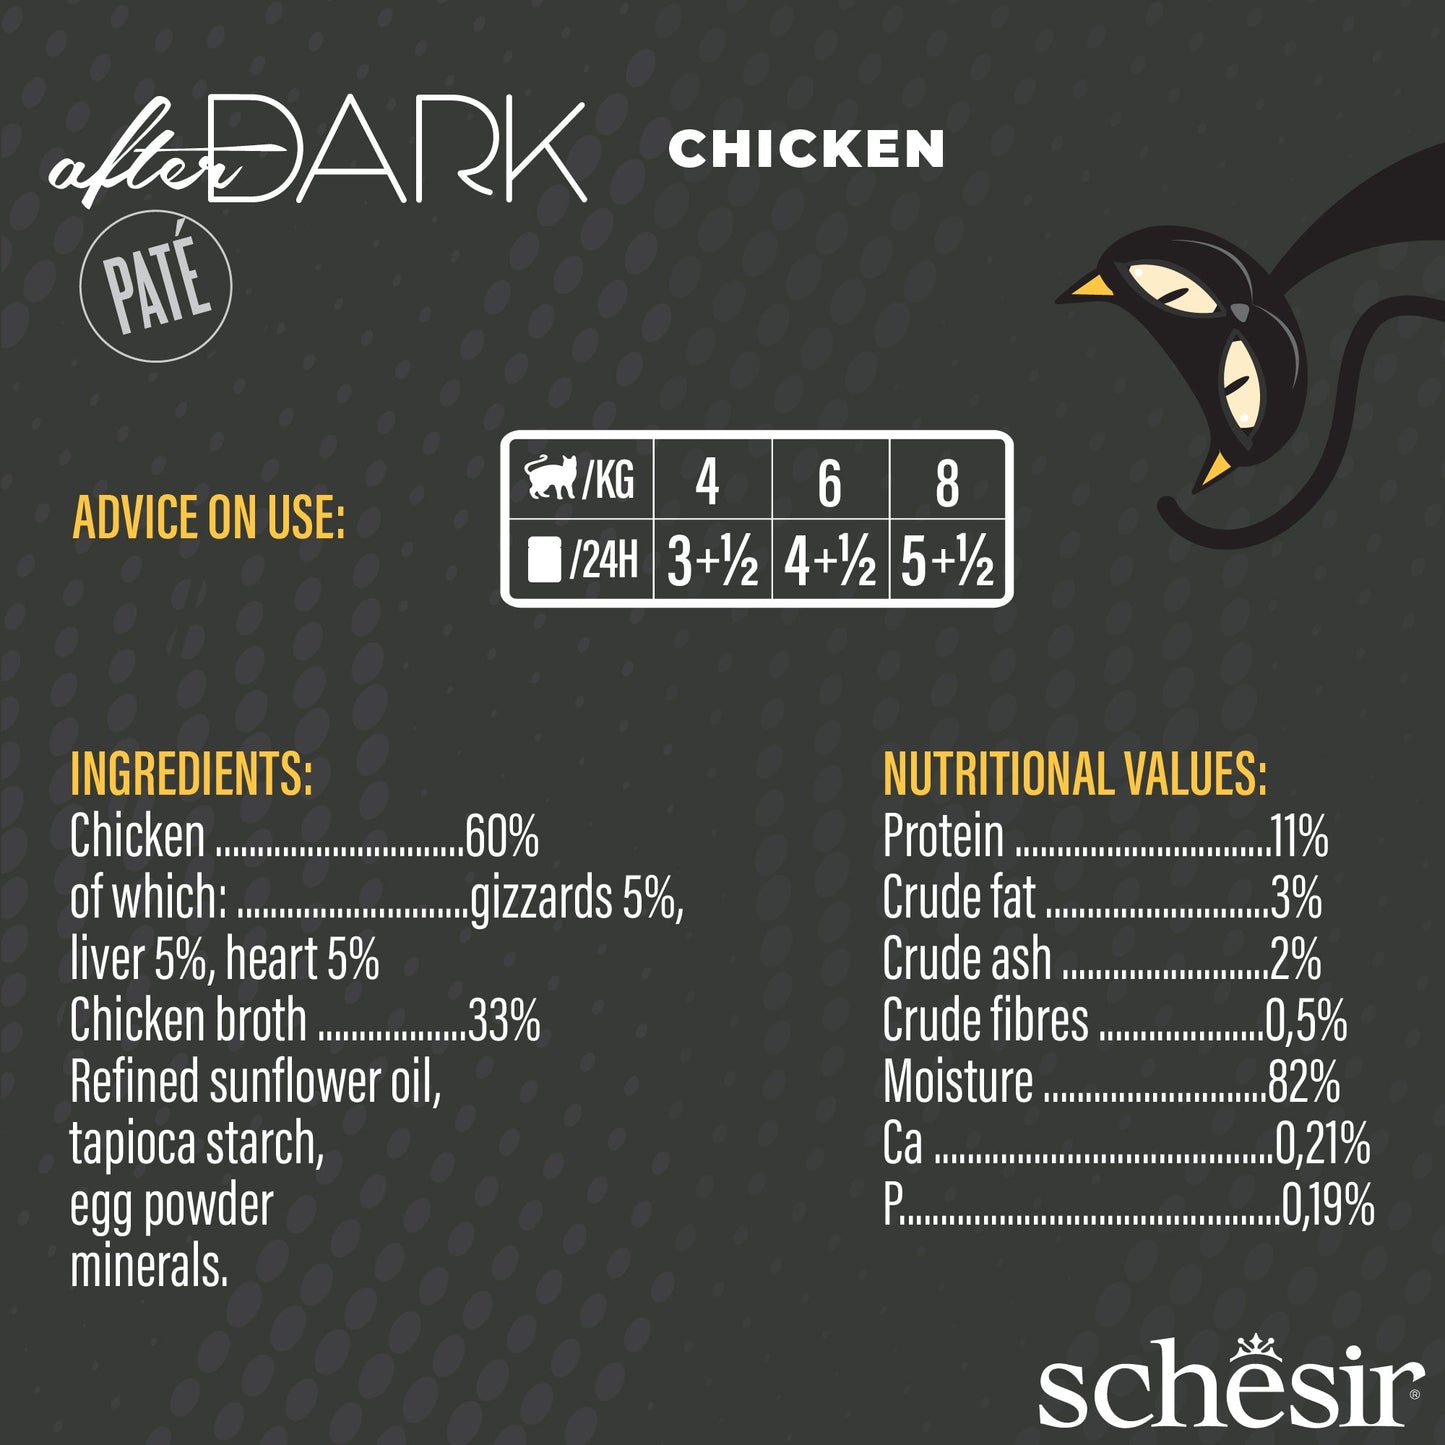 (Carton of 12) Schesir After Dark Pate - Chicken, 80g